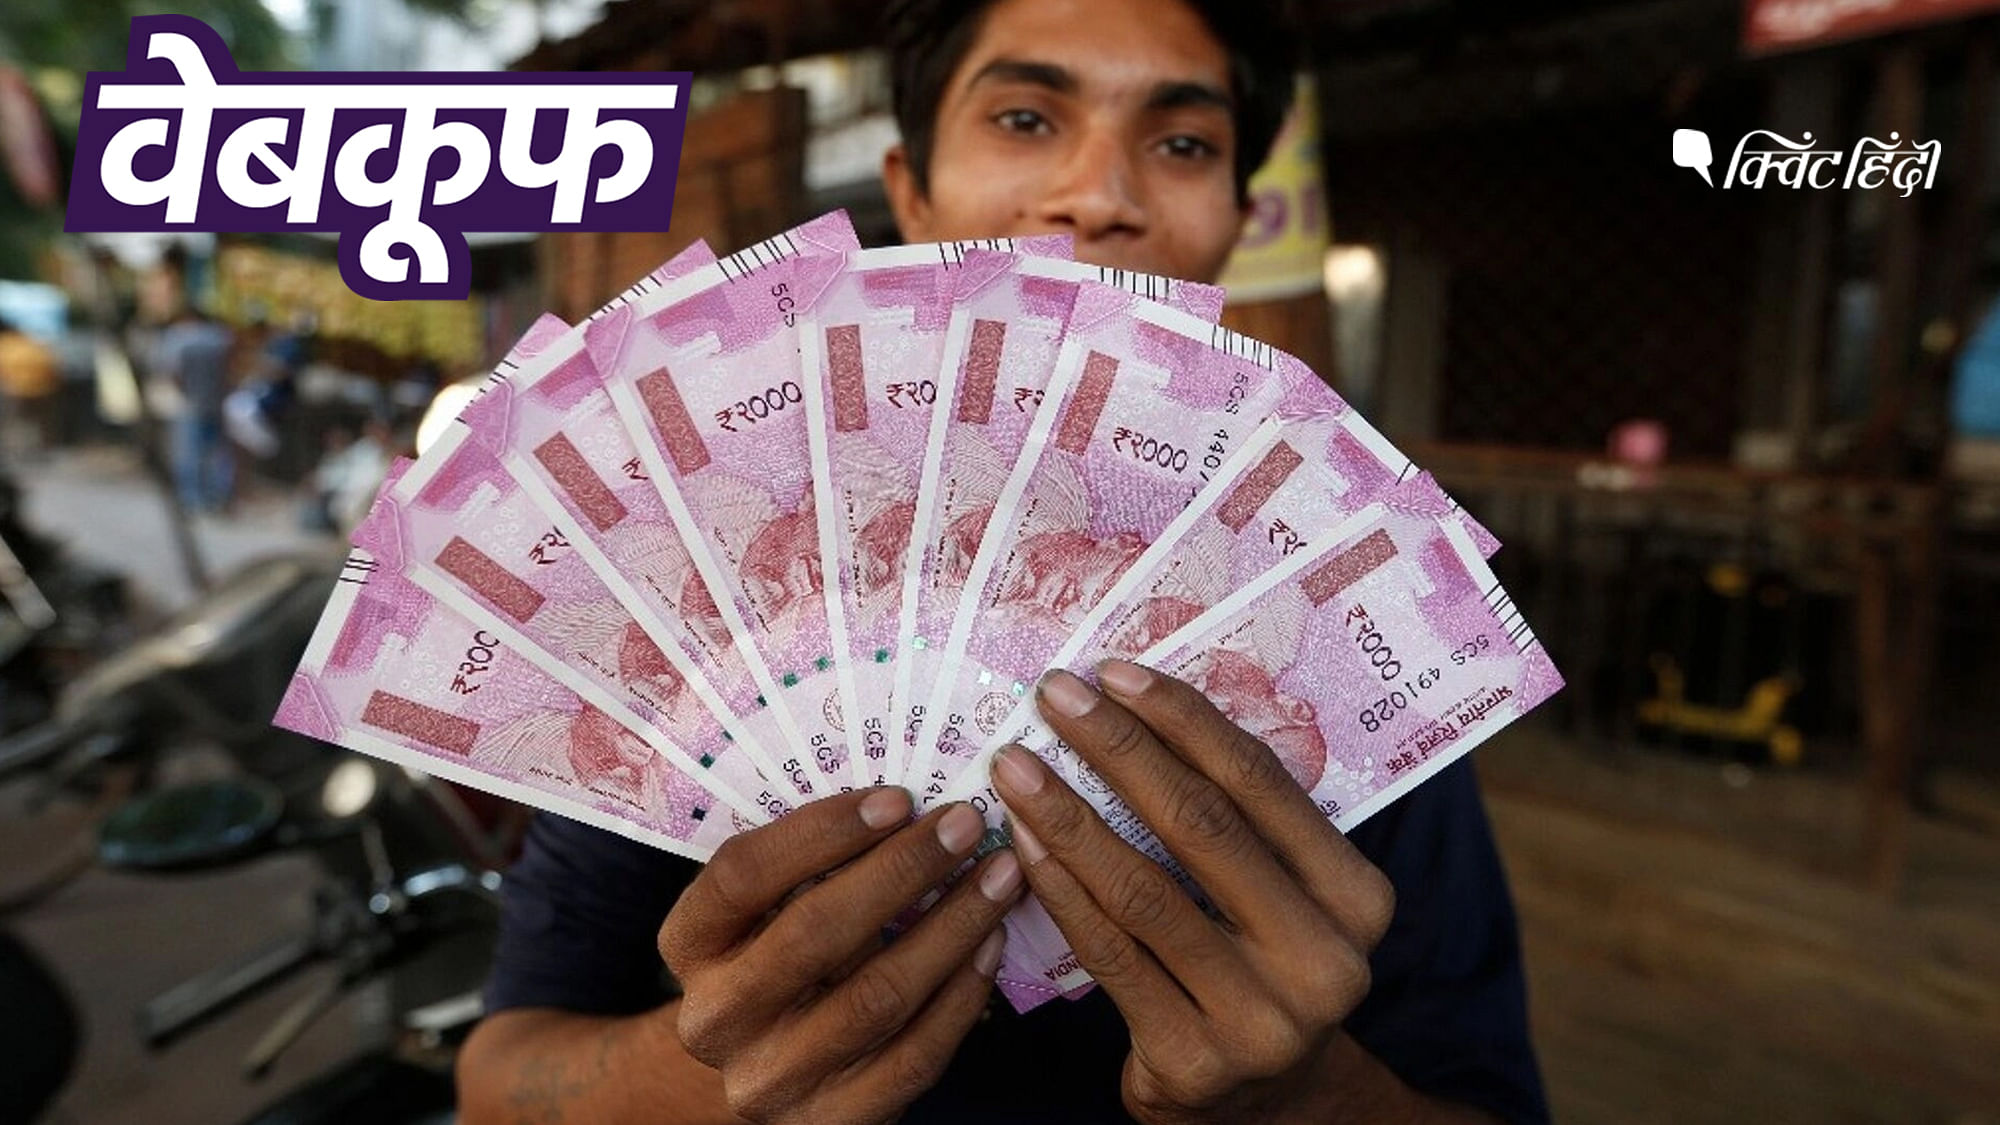 सोशल मीडिया पर मैसेज वायरल हुआ कि RBI 2000 रुपये के नोट वापस ले रहा है